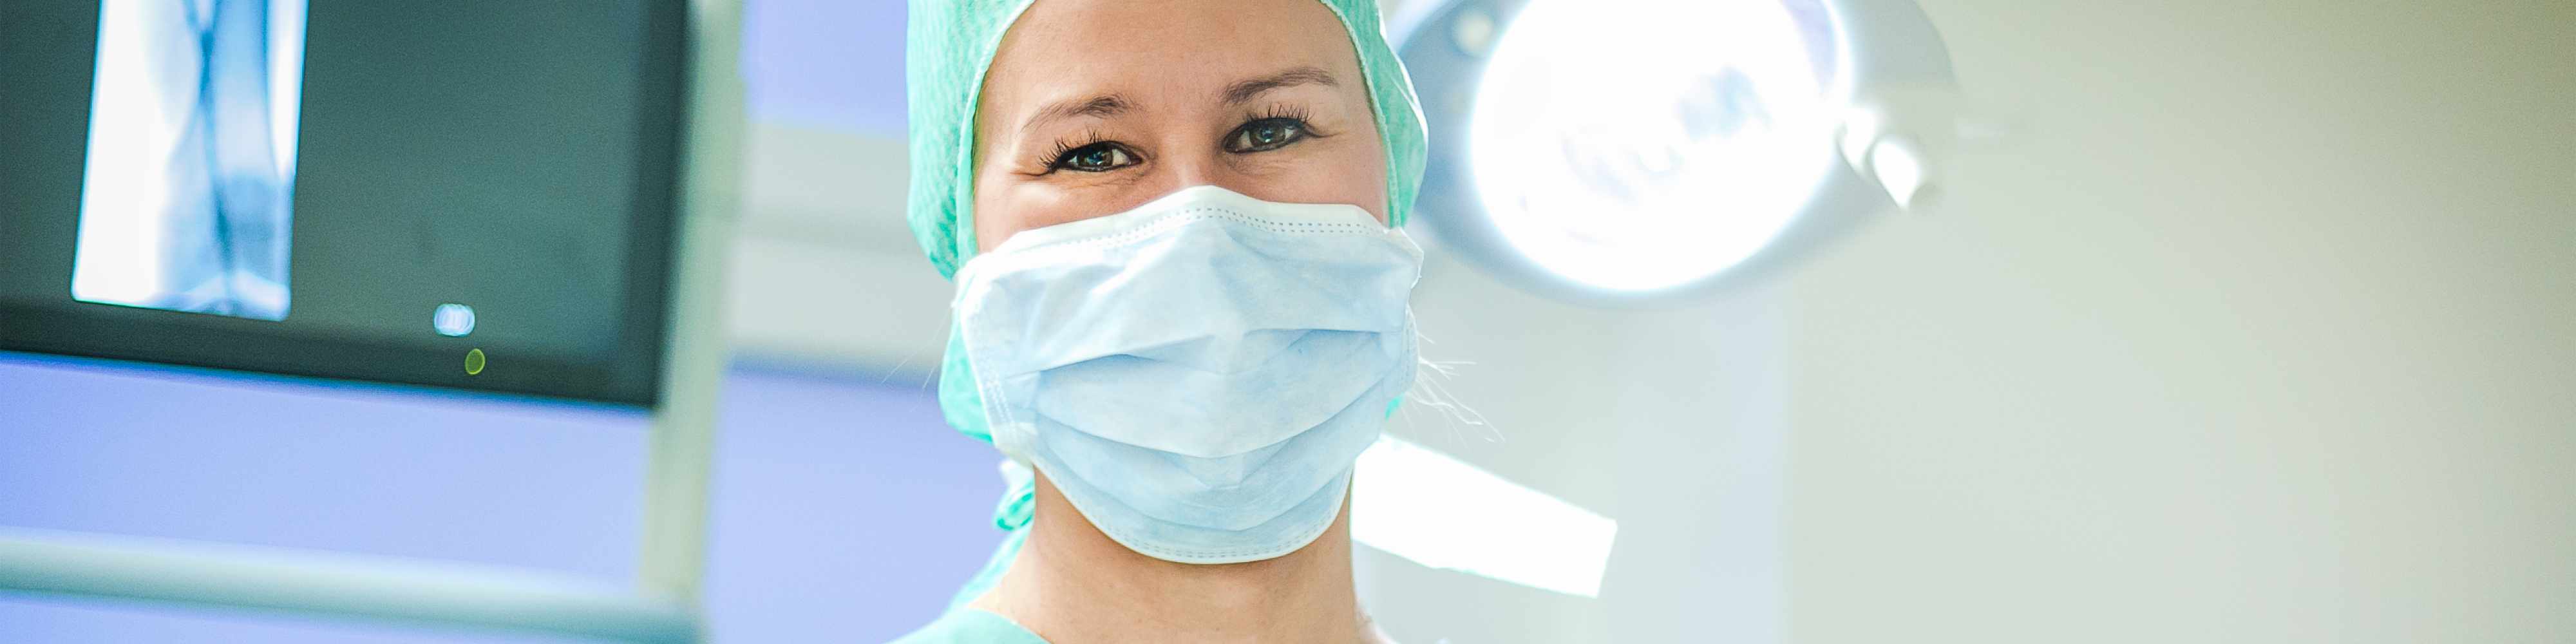 Anästhesietechnischer Assistent für die Anästhesieabteilung auf 520-€-Basis (m/w/d)